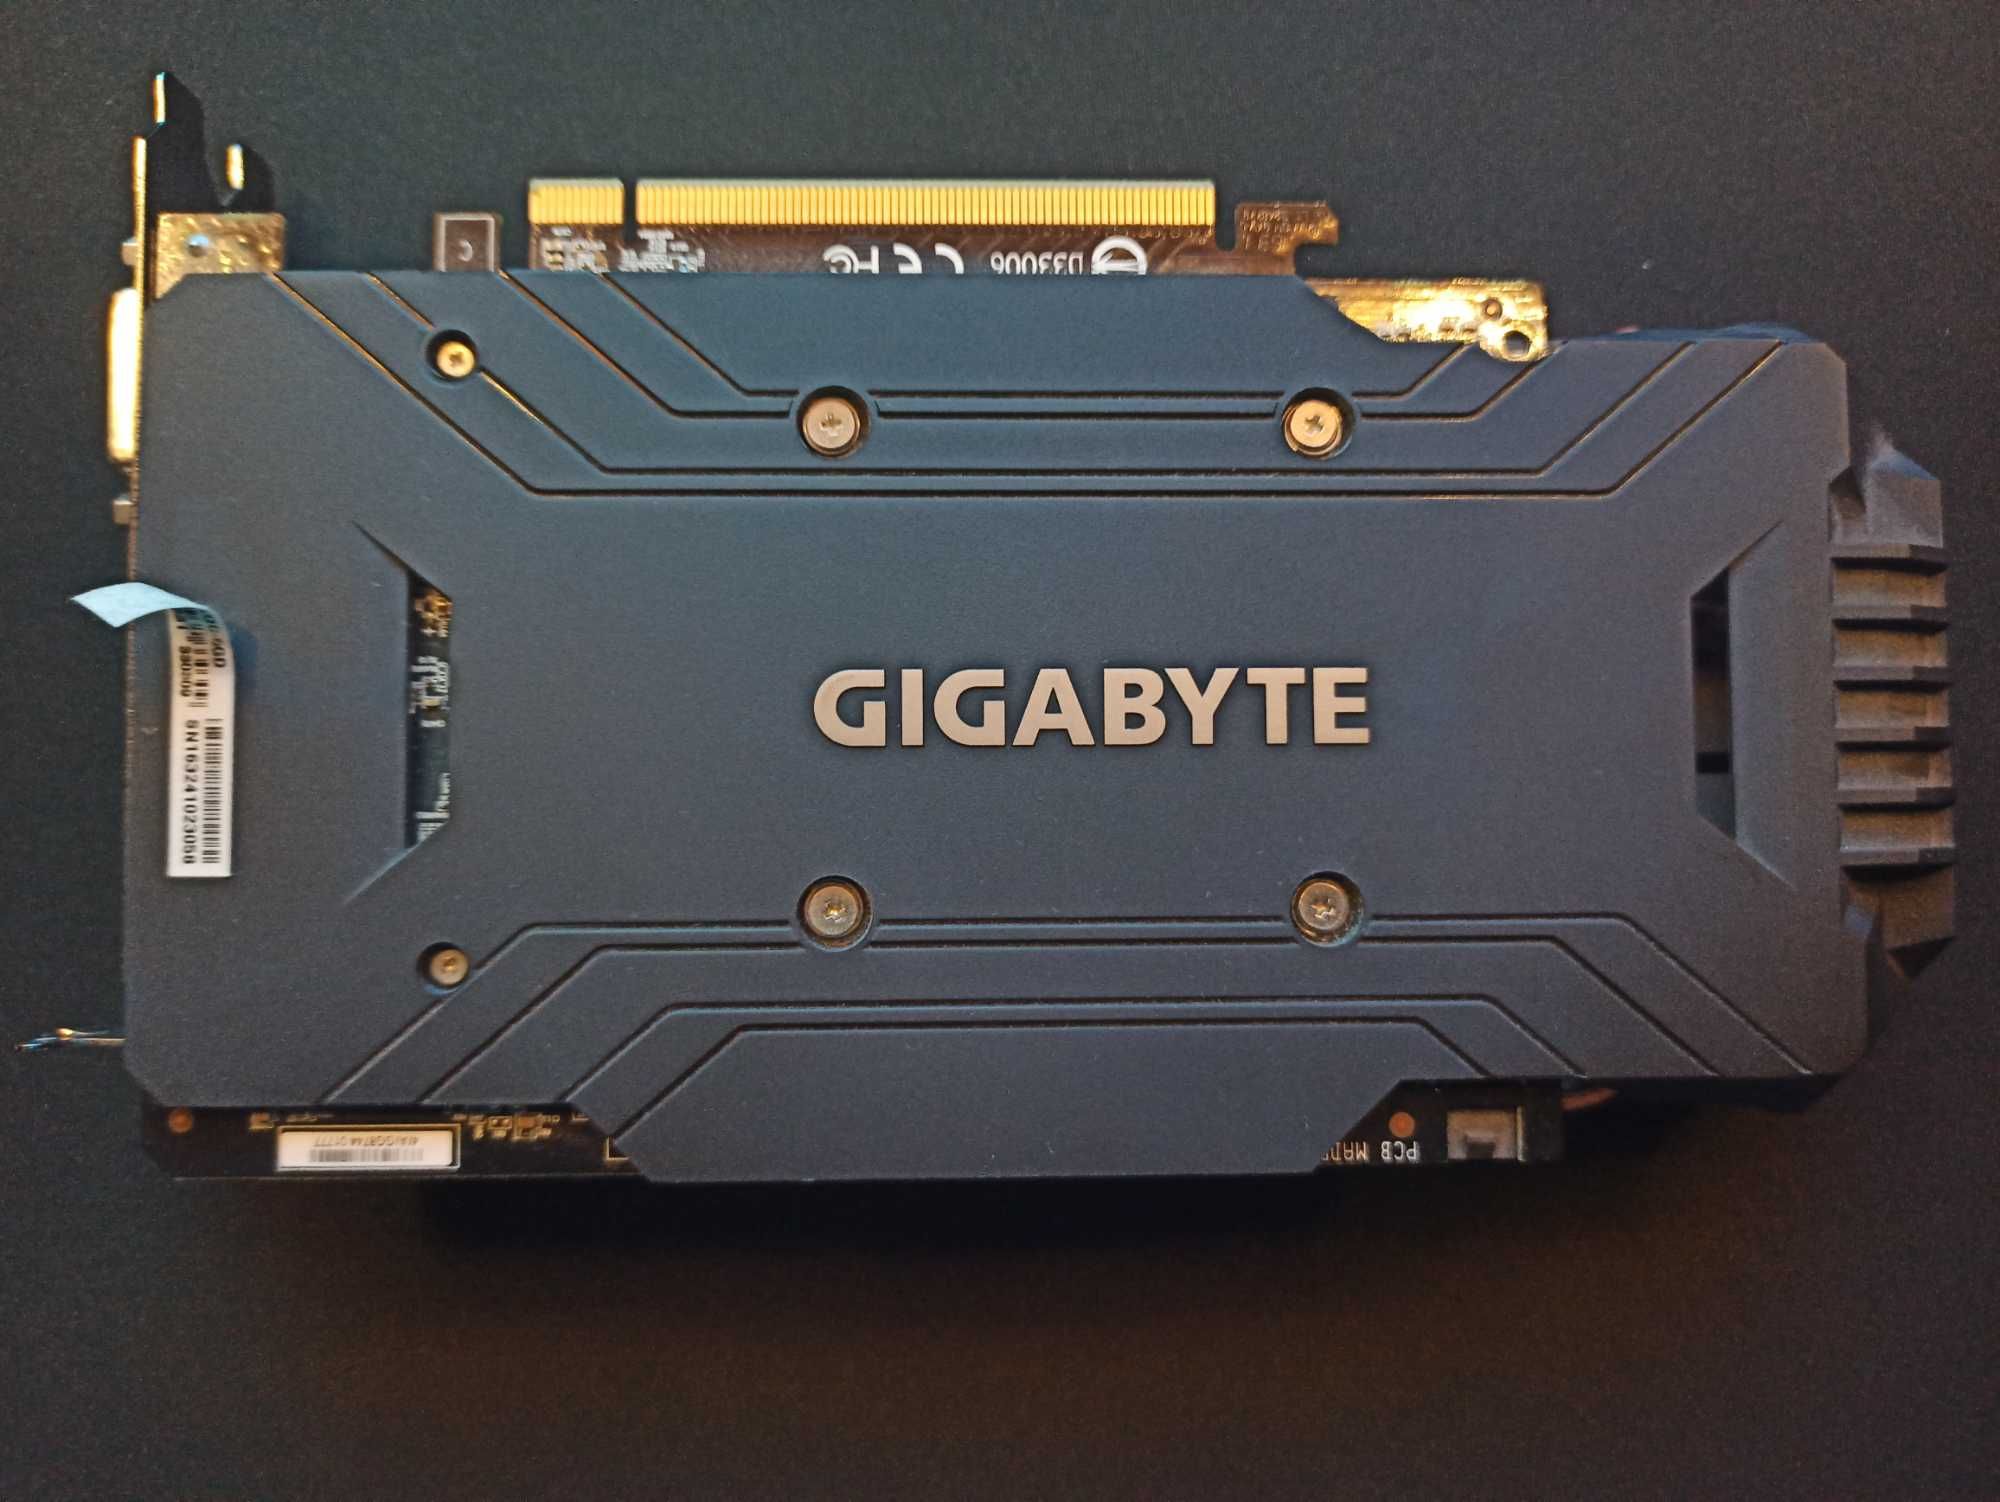 Geforce GTX 1060 6GB